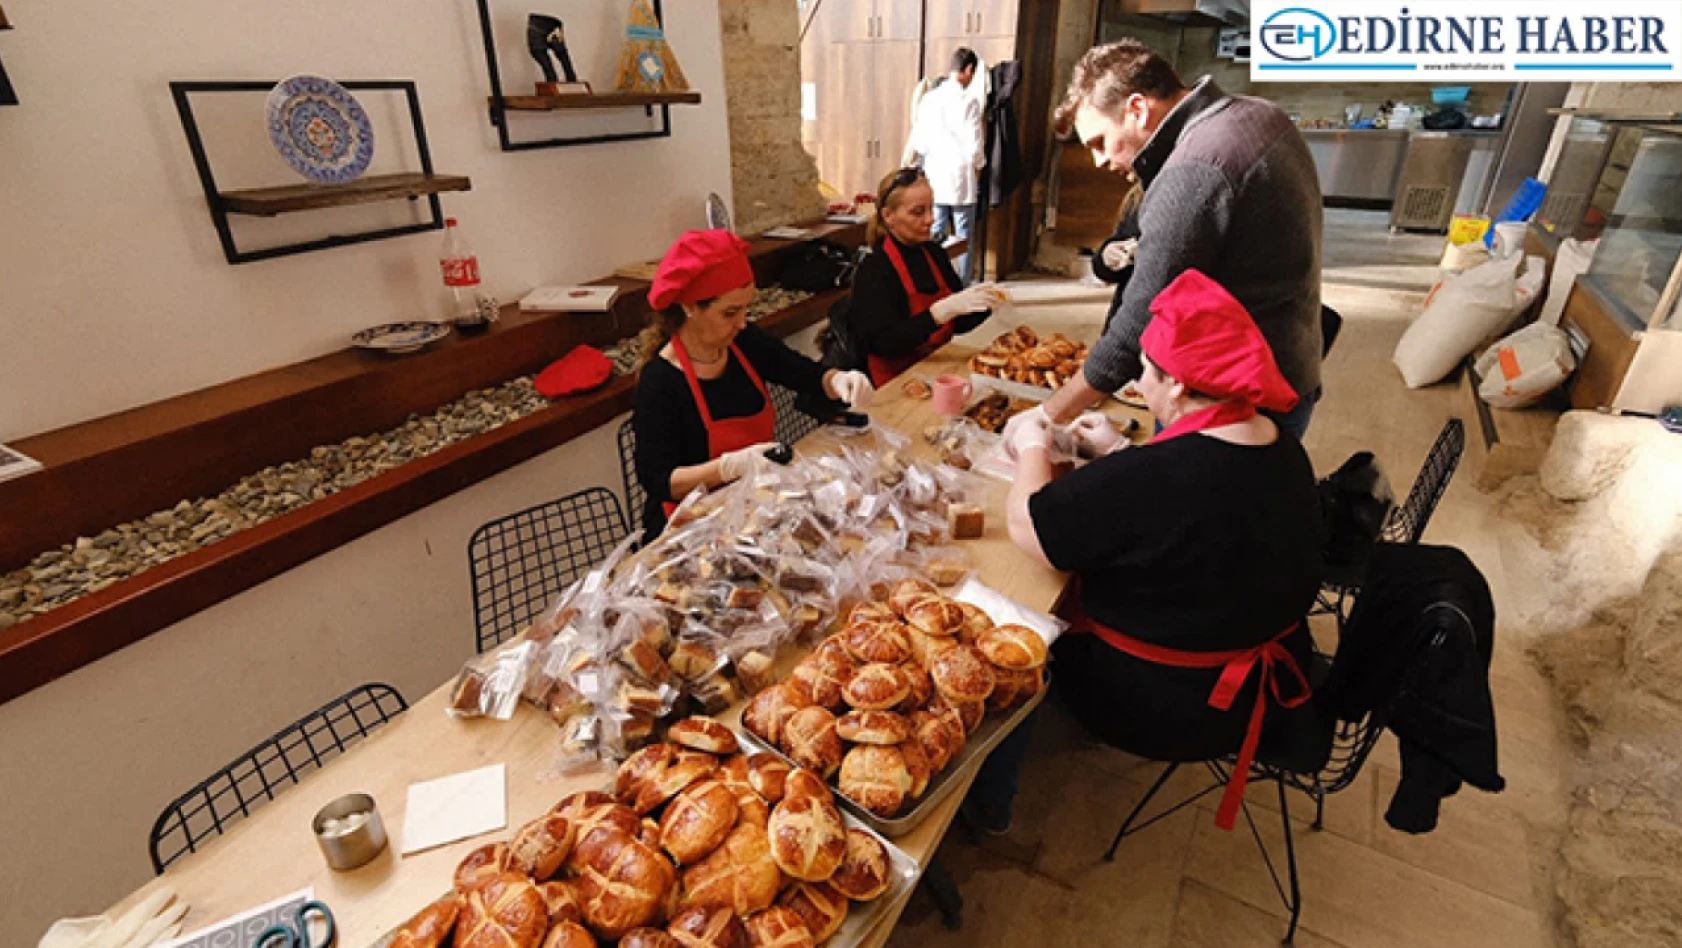 Edirne Olgunlaşma Enstitüsü depremzedelere ücretsiz yemek ikram ediyor